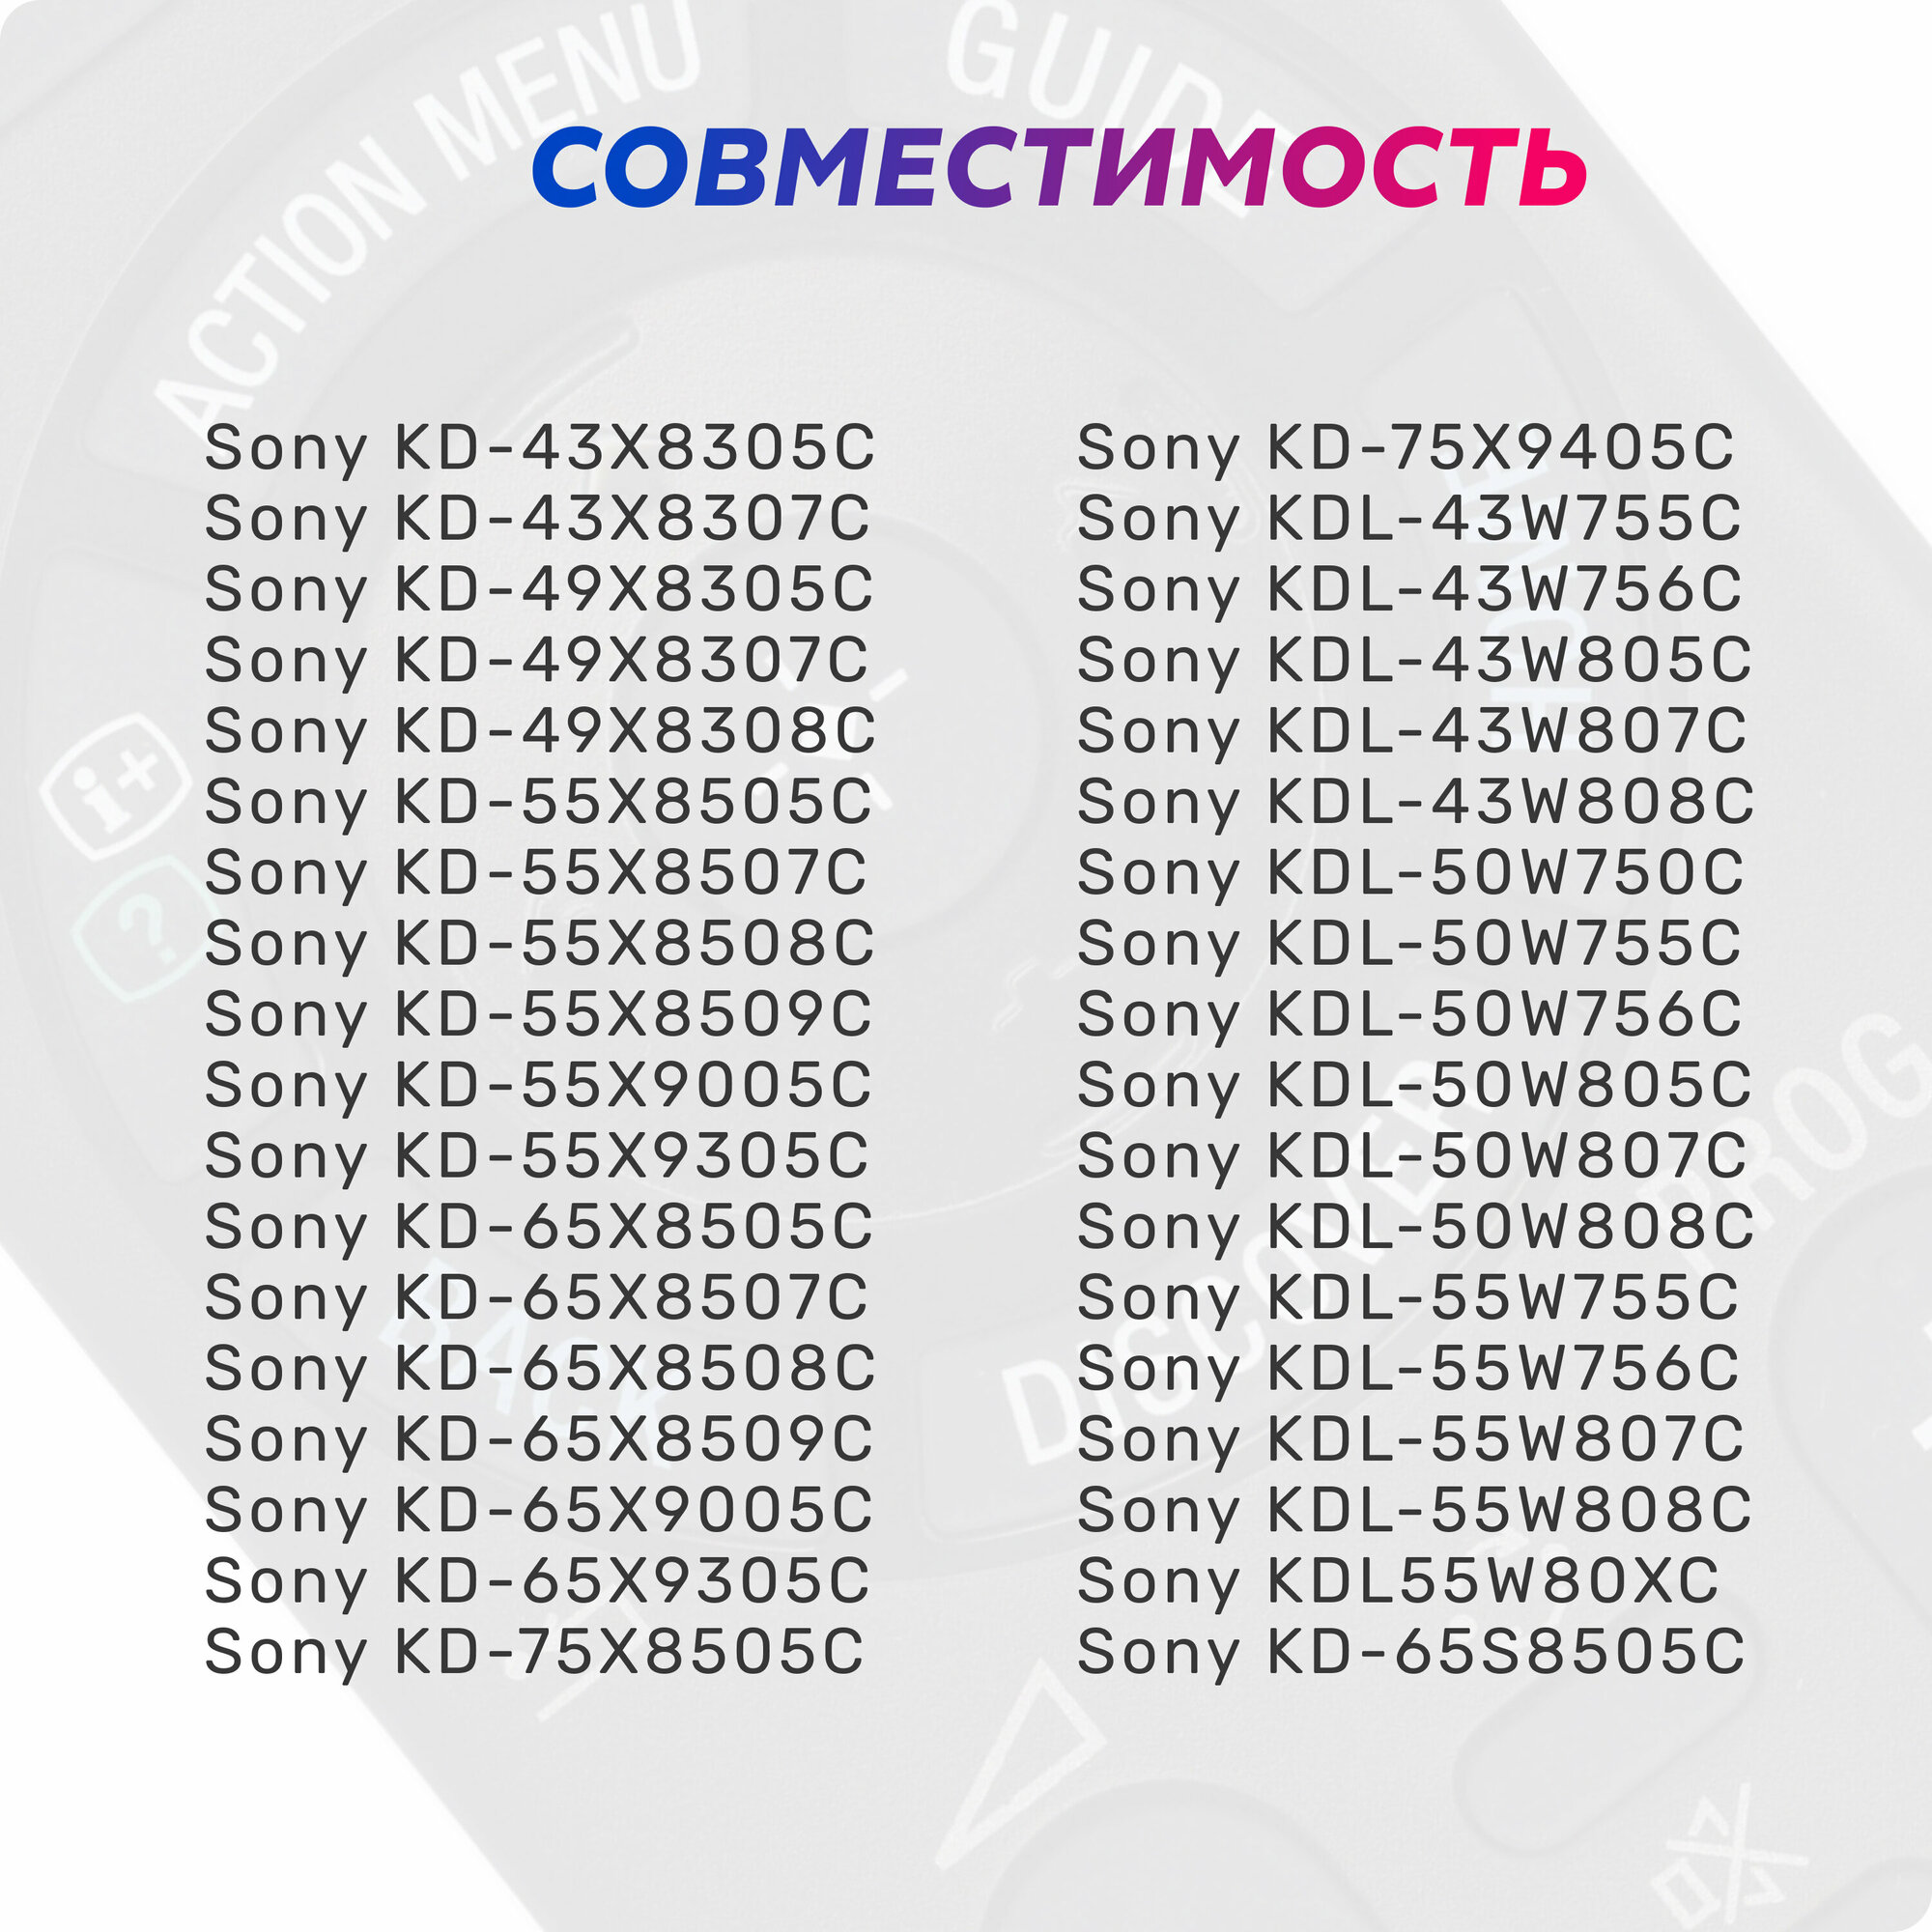 Пульт ДУ Huayu для Sony RMT- TX100E